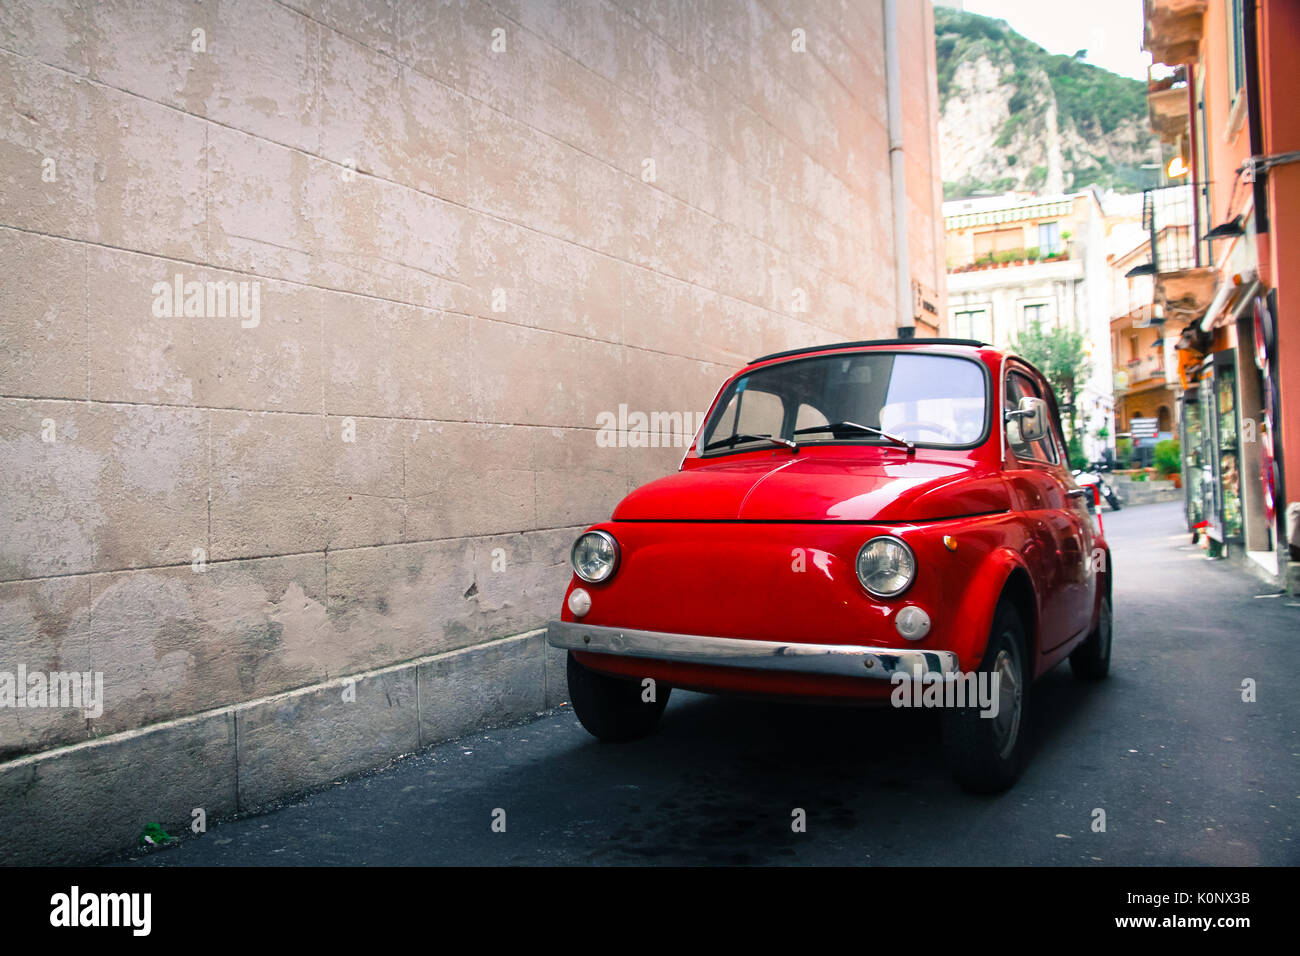 Rote alte gut erhaltene alte italienische Klassiker in einer kleinen Gasse in einem Italienischen sizilianische Stadt mit einem großen, leeren stein Wand auf der linken Seite geparkt Stockfoto